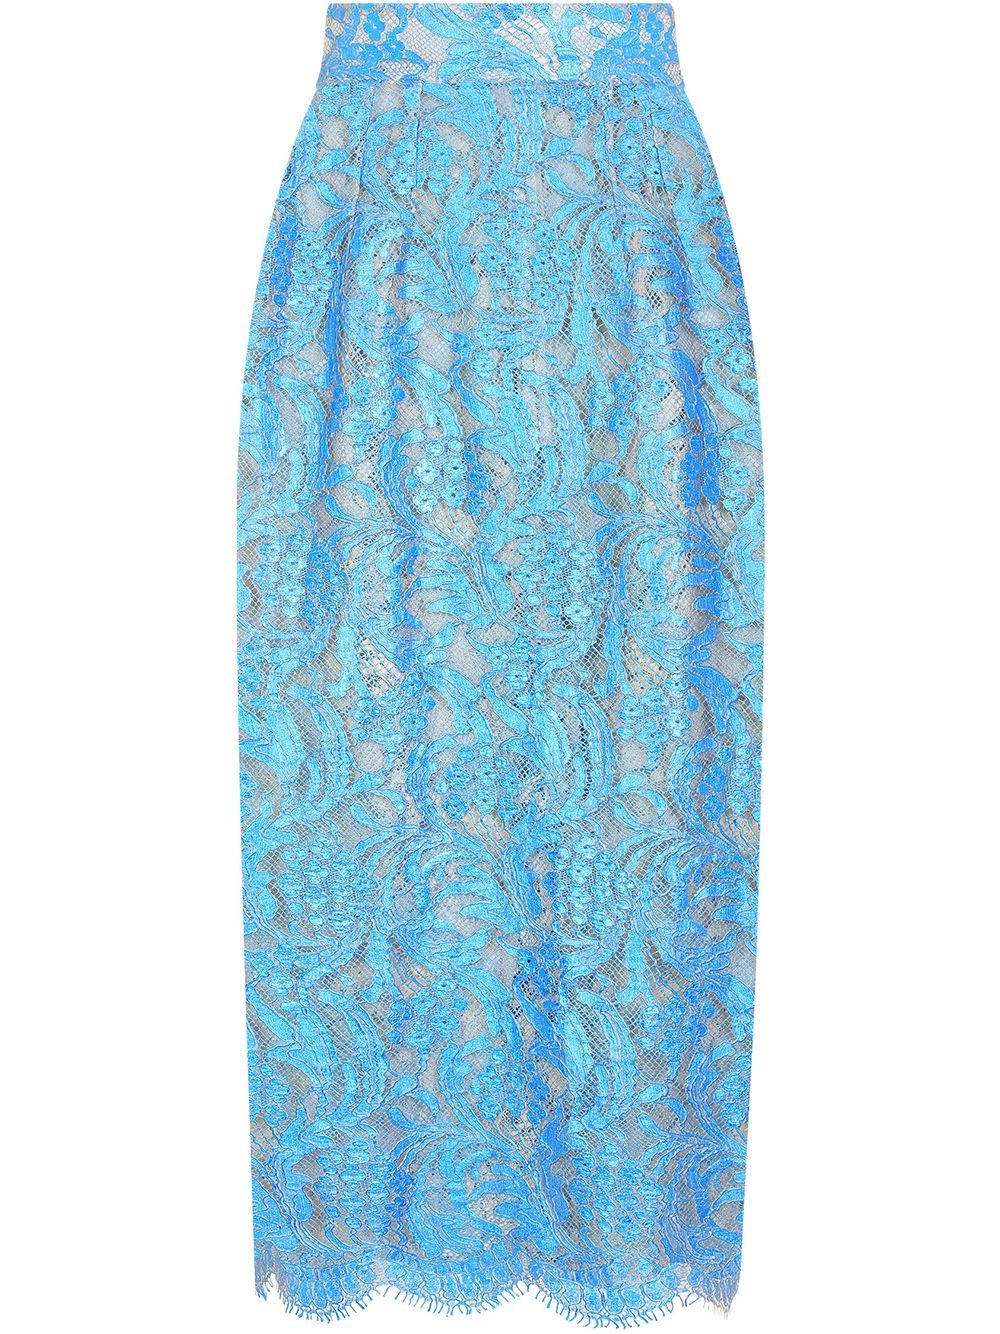 Dolce & Gabbana high-waisted lace pencil skirt - Blue von Dolce & Gabbana